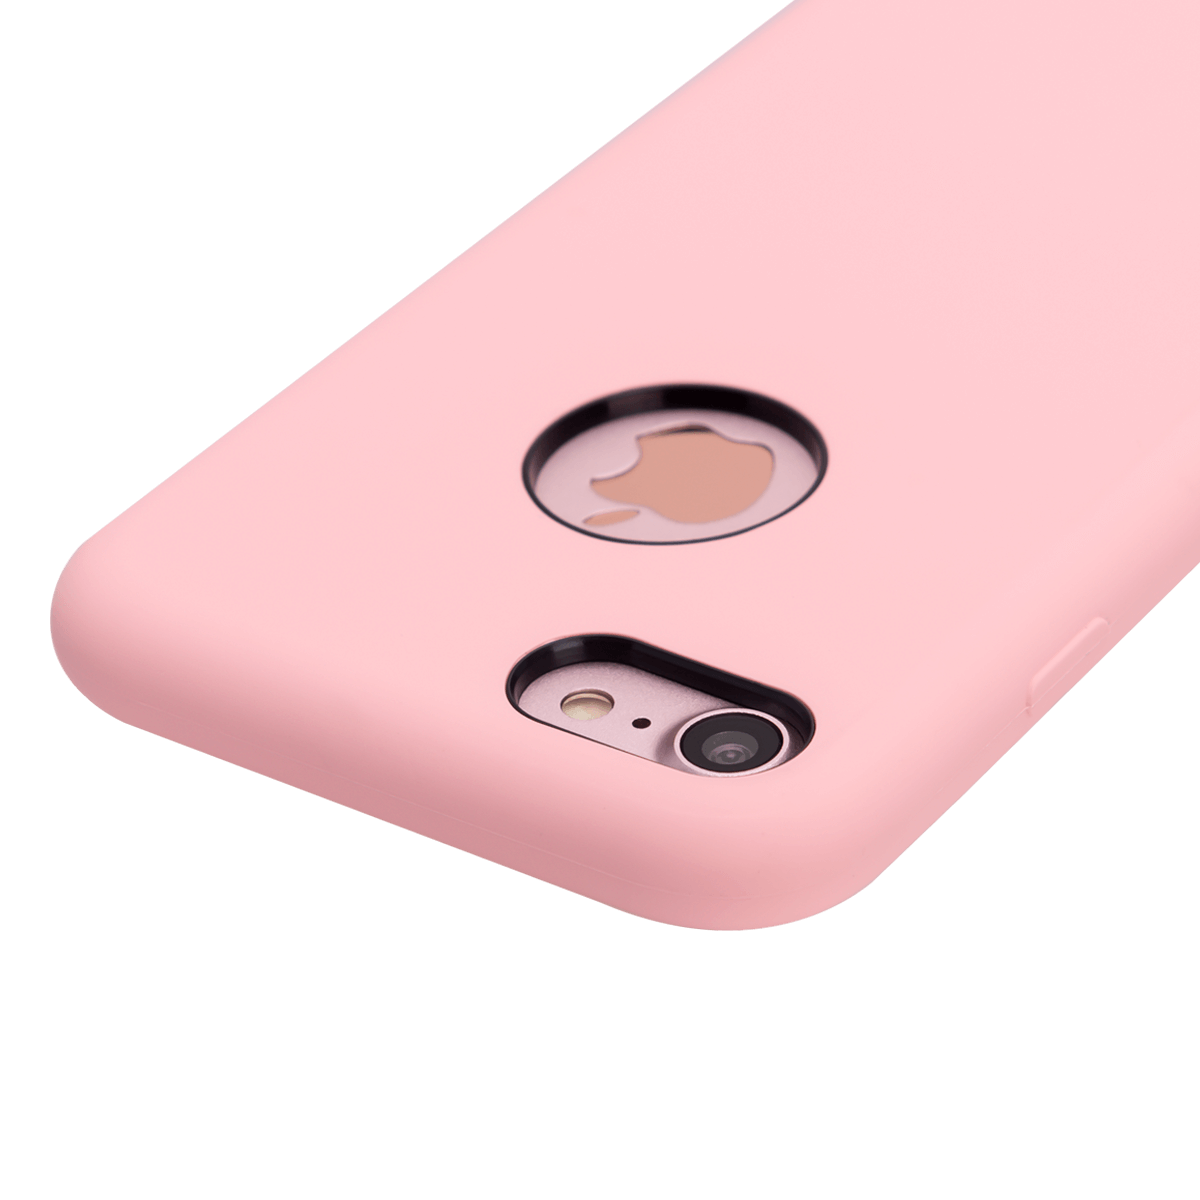 iPhone 7/8 için spada Liquid Silikon Pembe renkli kapak